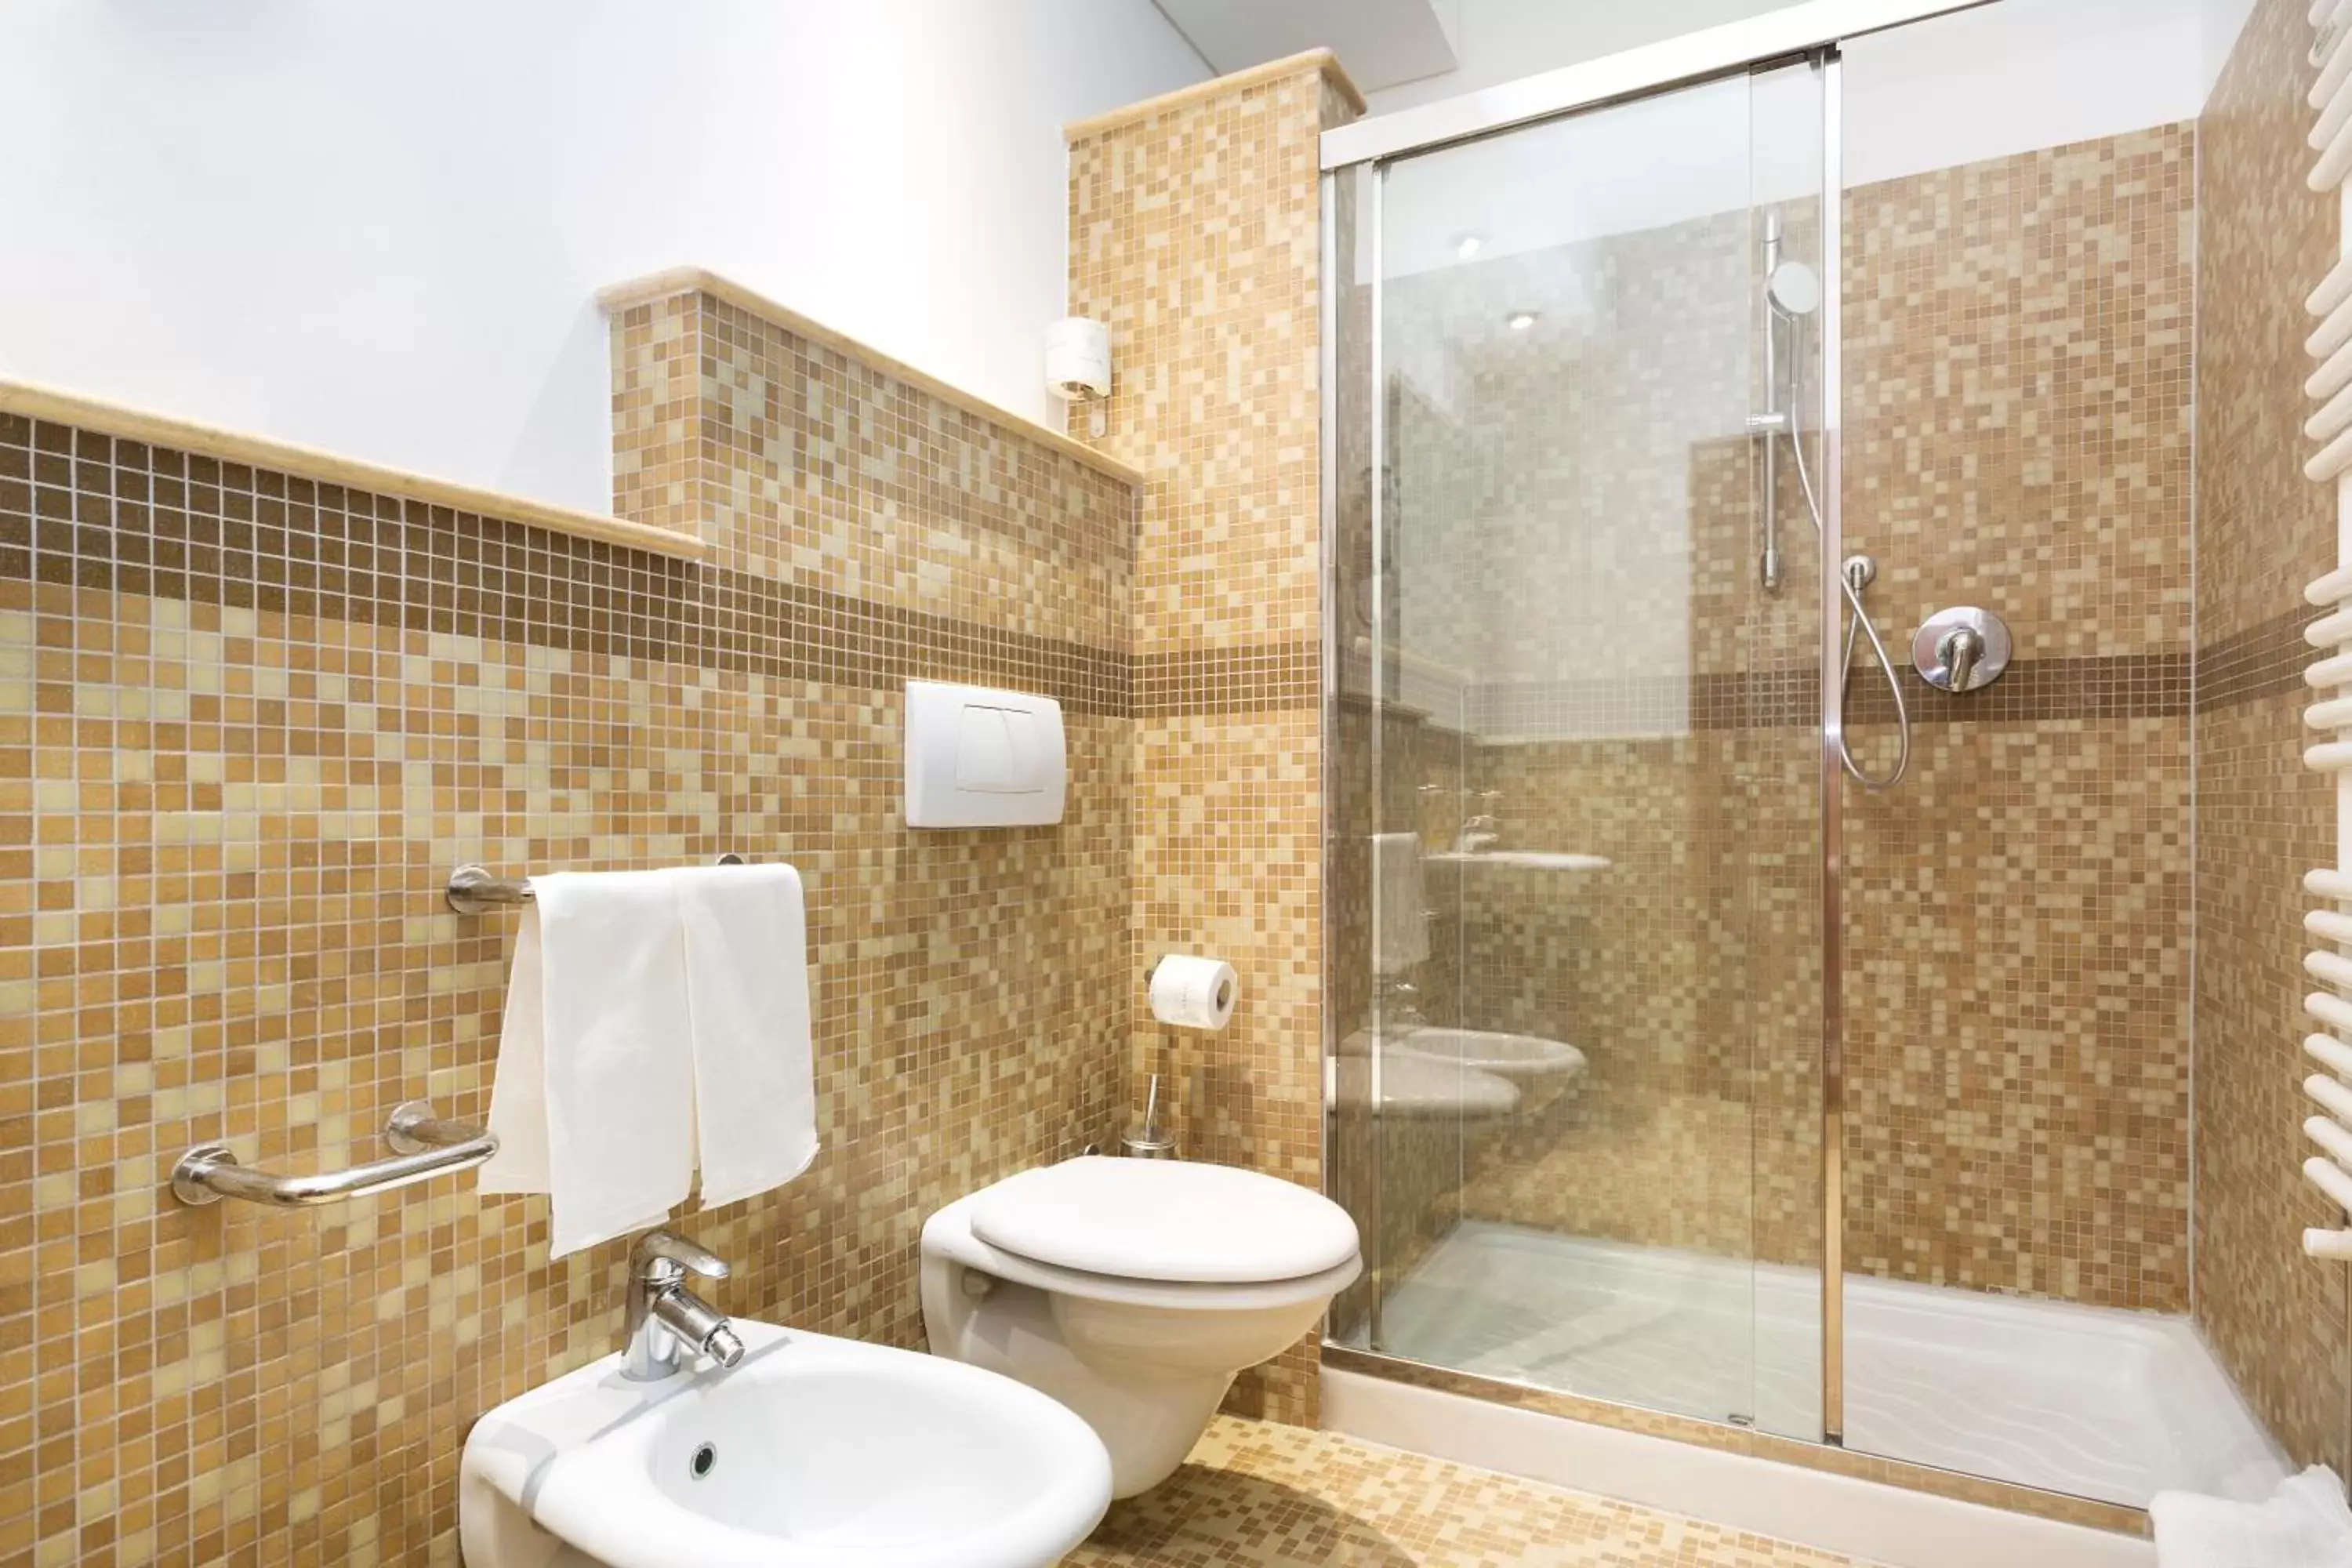 Bathroom in B&B Hotel Modena